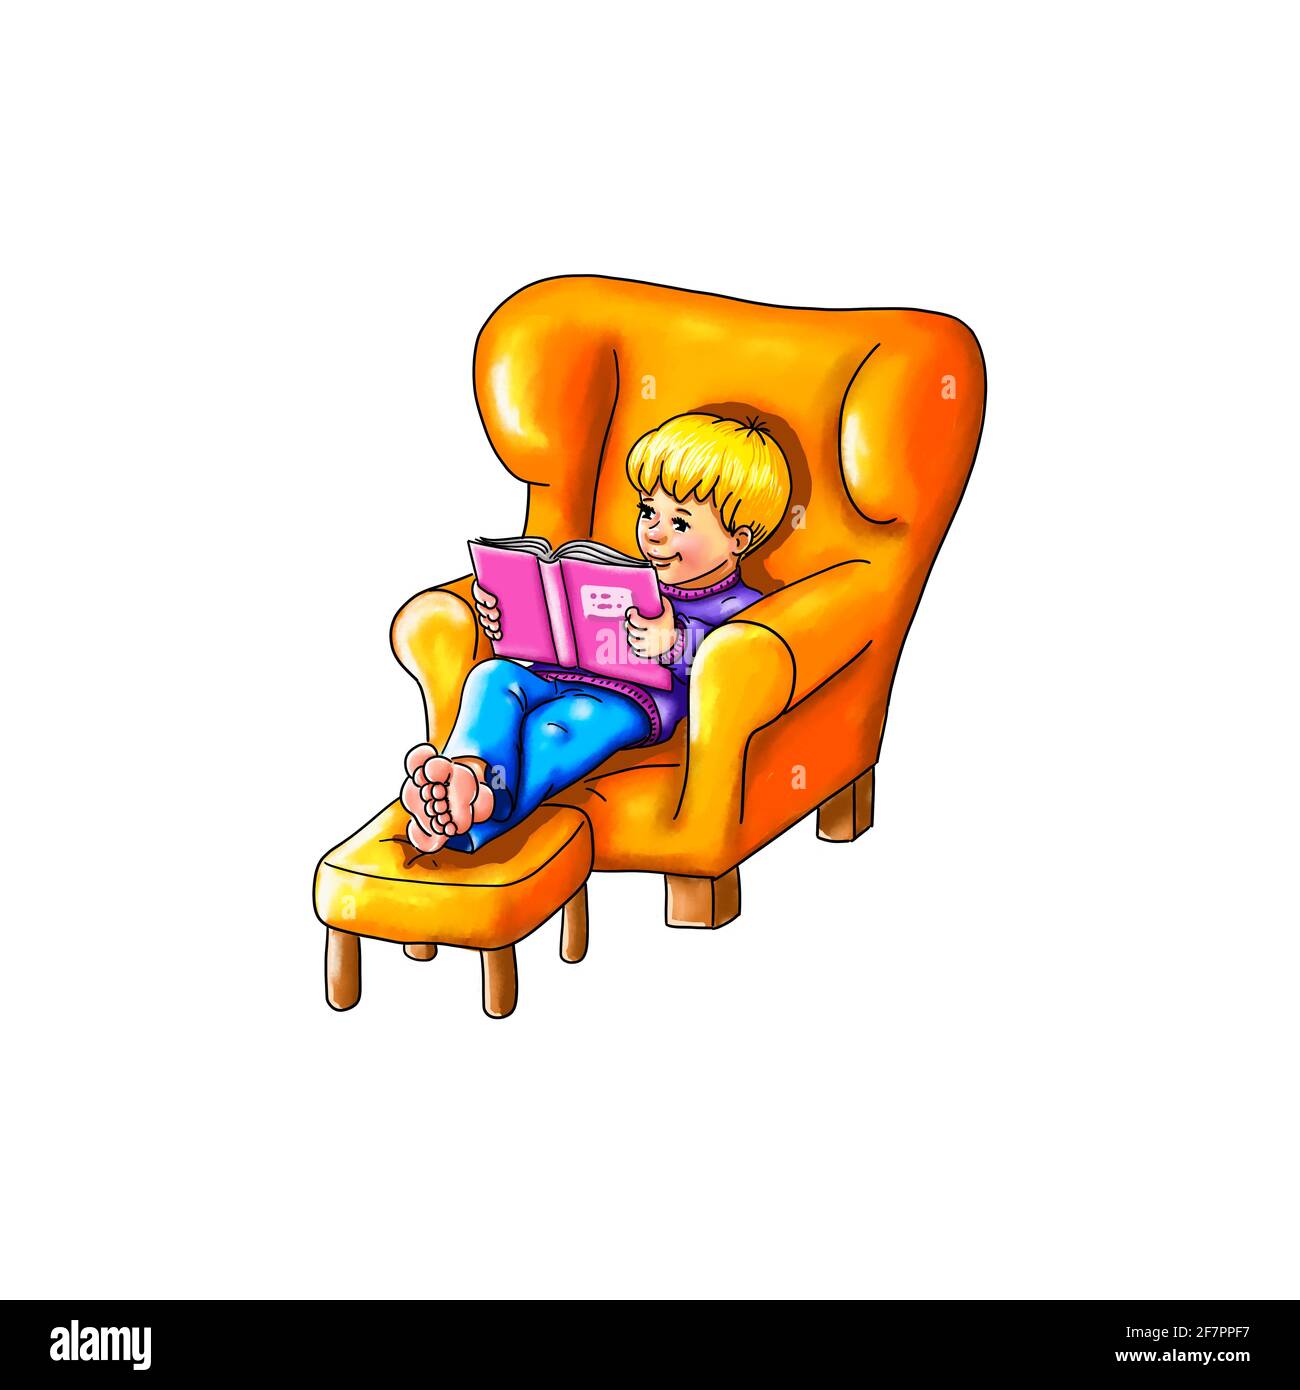 El niño se sienta cómodamente en un sillón descalzo pies sobre el taburete cómodamente lee libro infantil fascinado perdido en la infancia disfrutar ganar tiempo libre Foto de stock